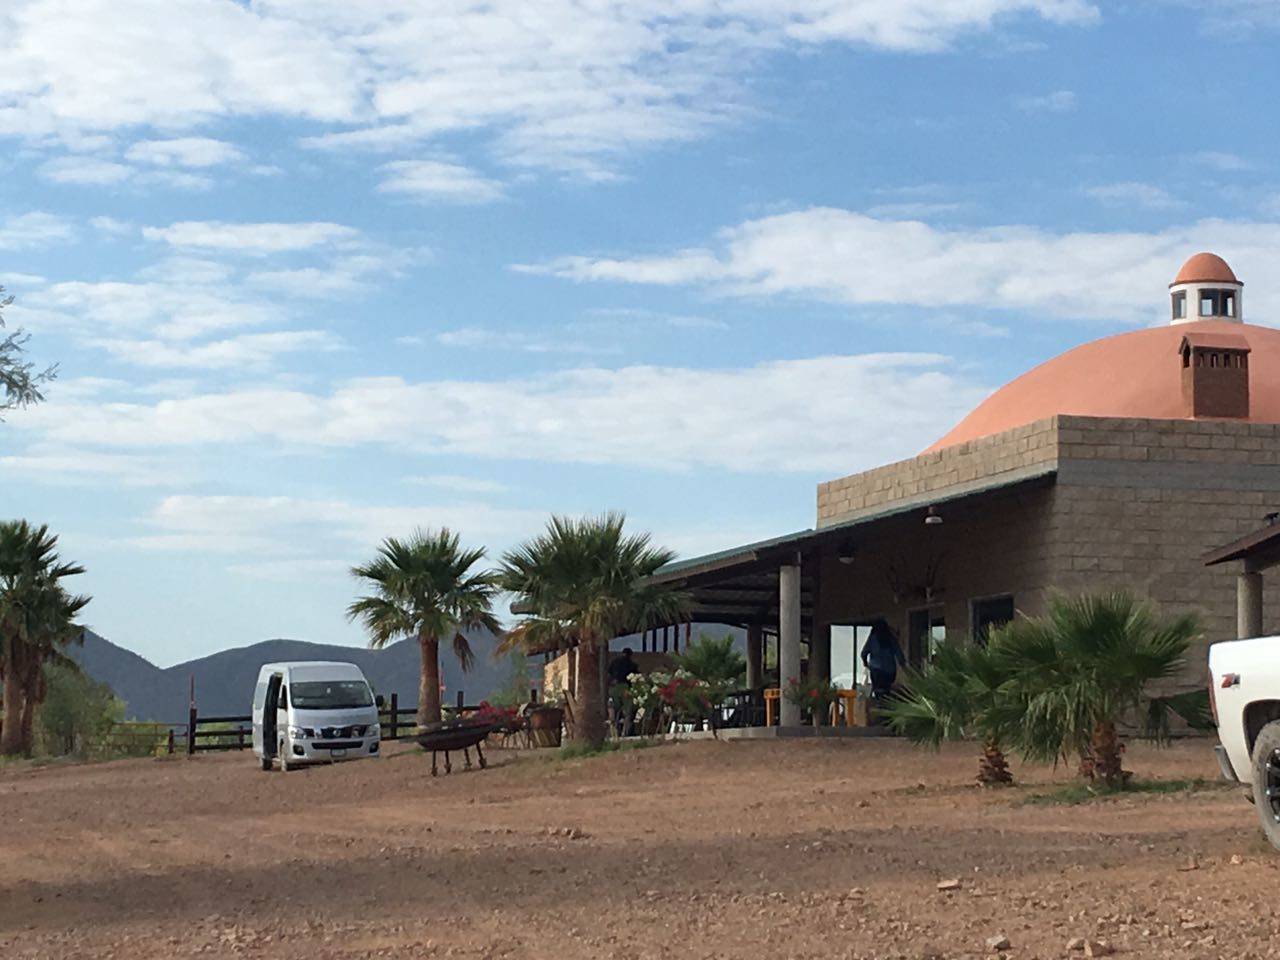 Turismo. El rancho el Peñolito se encuentra a hora y media de la ciudad de Torreón y es una opción de ecoturismo.